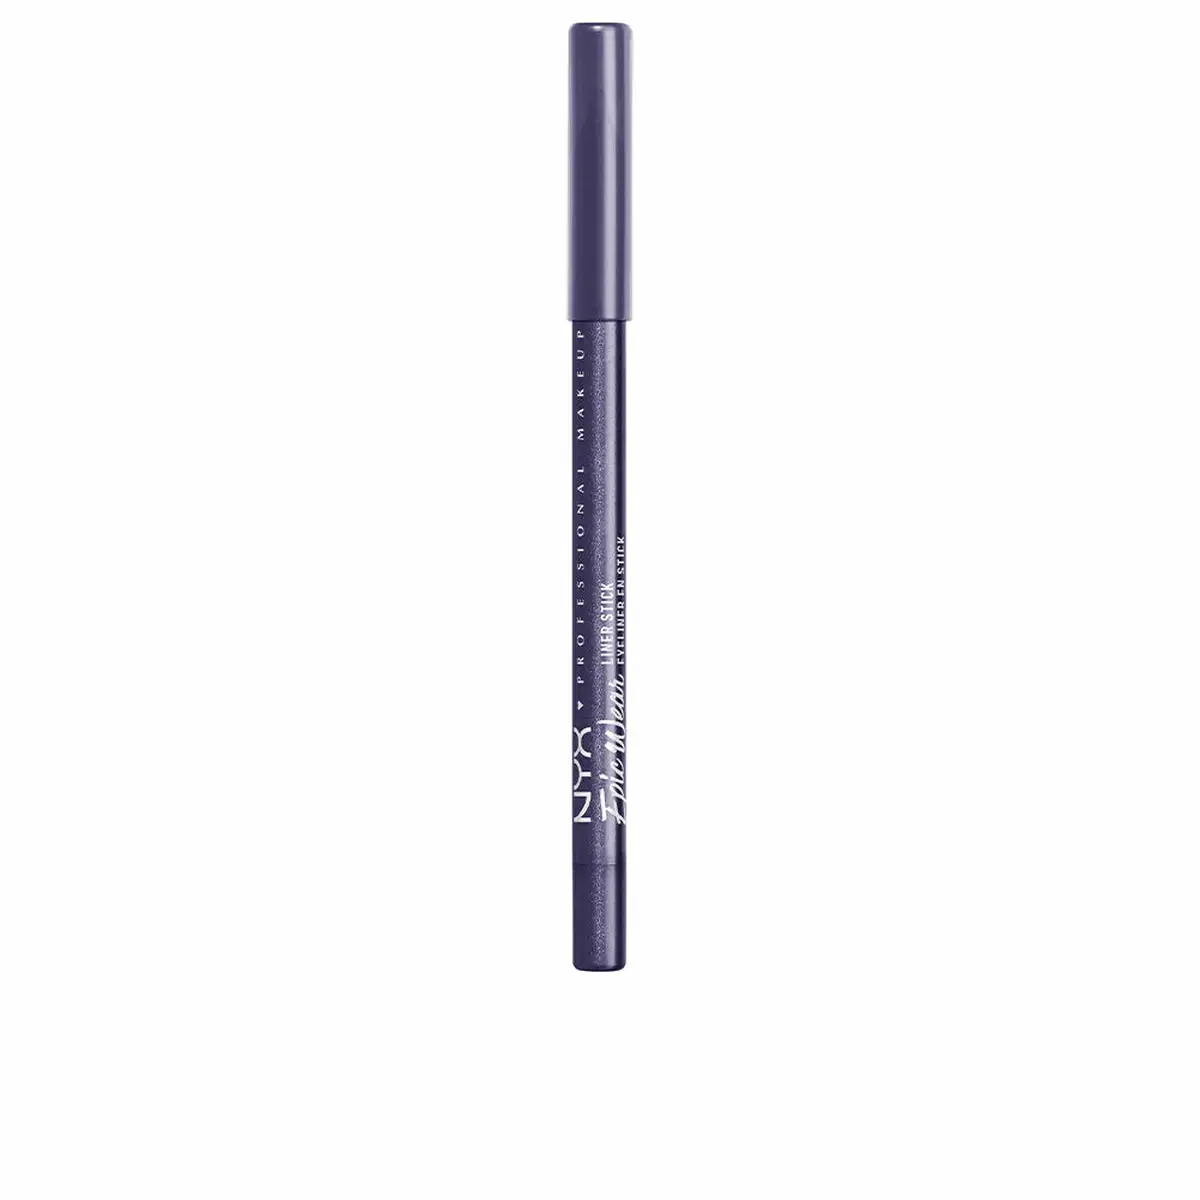 Crayon pour les yeux nyx epic wear liner sticks fierce purple 1 22 g _1269. DIAYTAR SENEGAL - Votre Destination Shopping pour Tous. Parcourez notre boutique en ligne et découvrez une variété de produits pour satisfaire tous vos besoins et désirs.